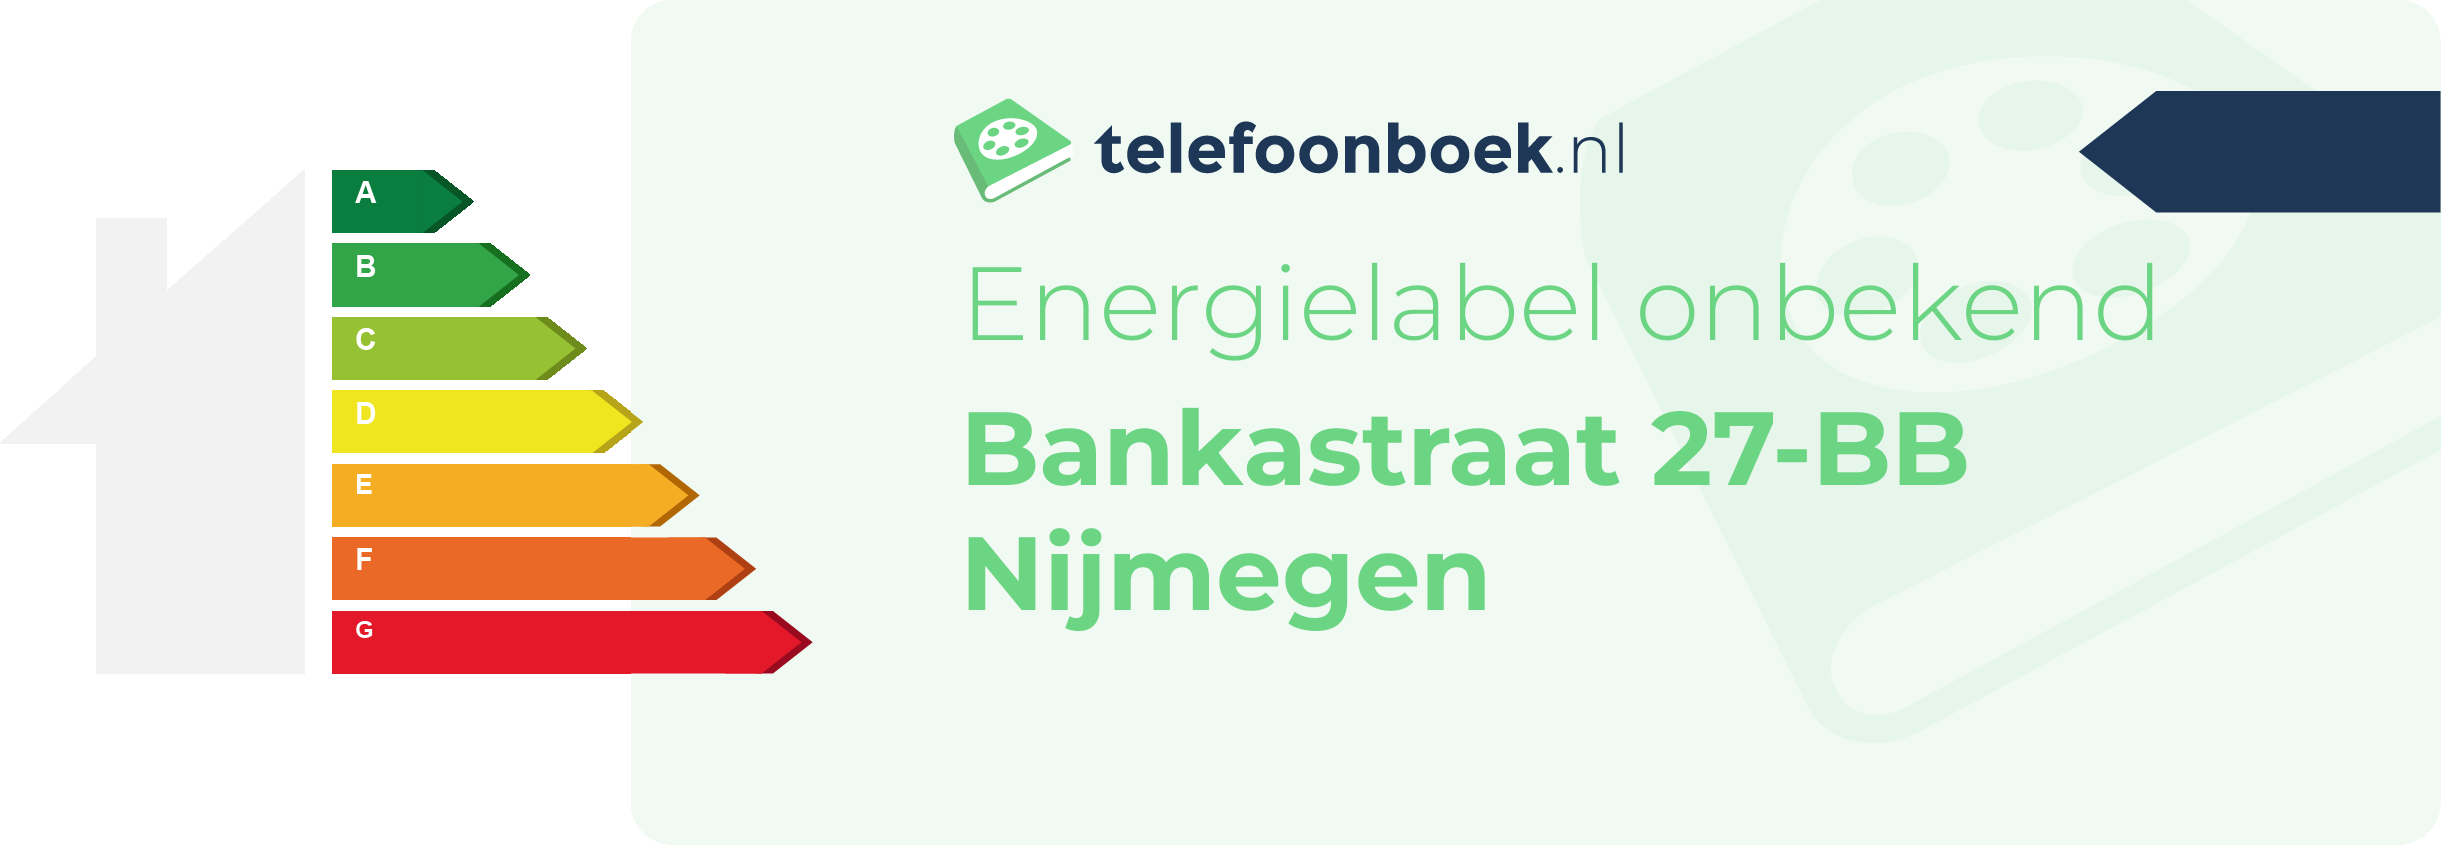 Energielabel Bankastraat 27-BB Nijmegen